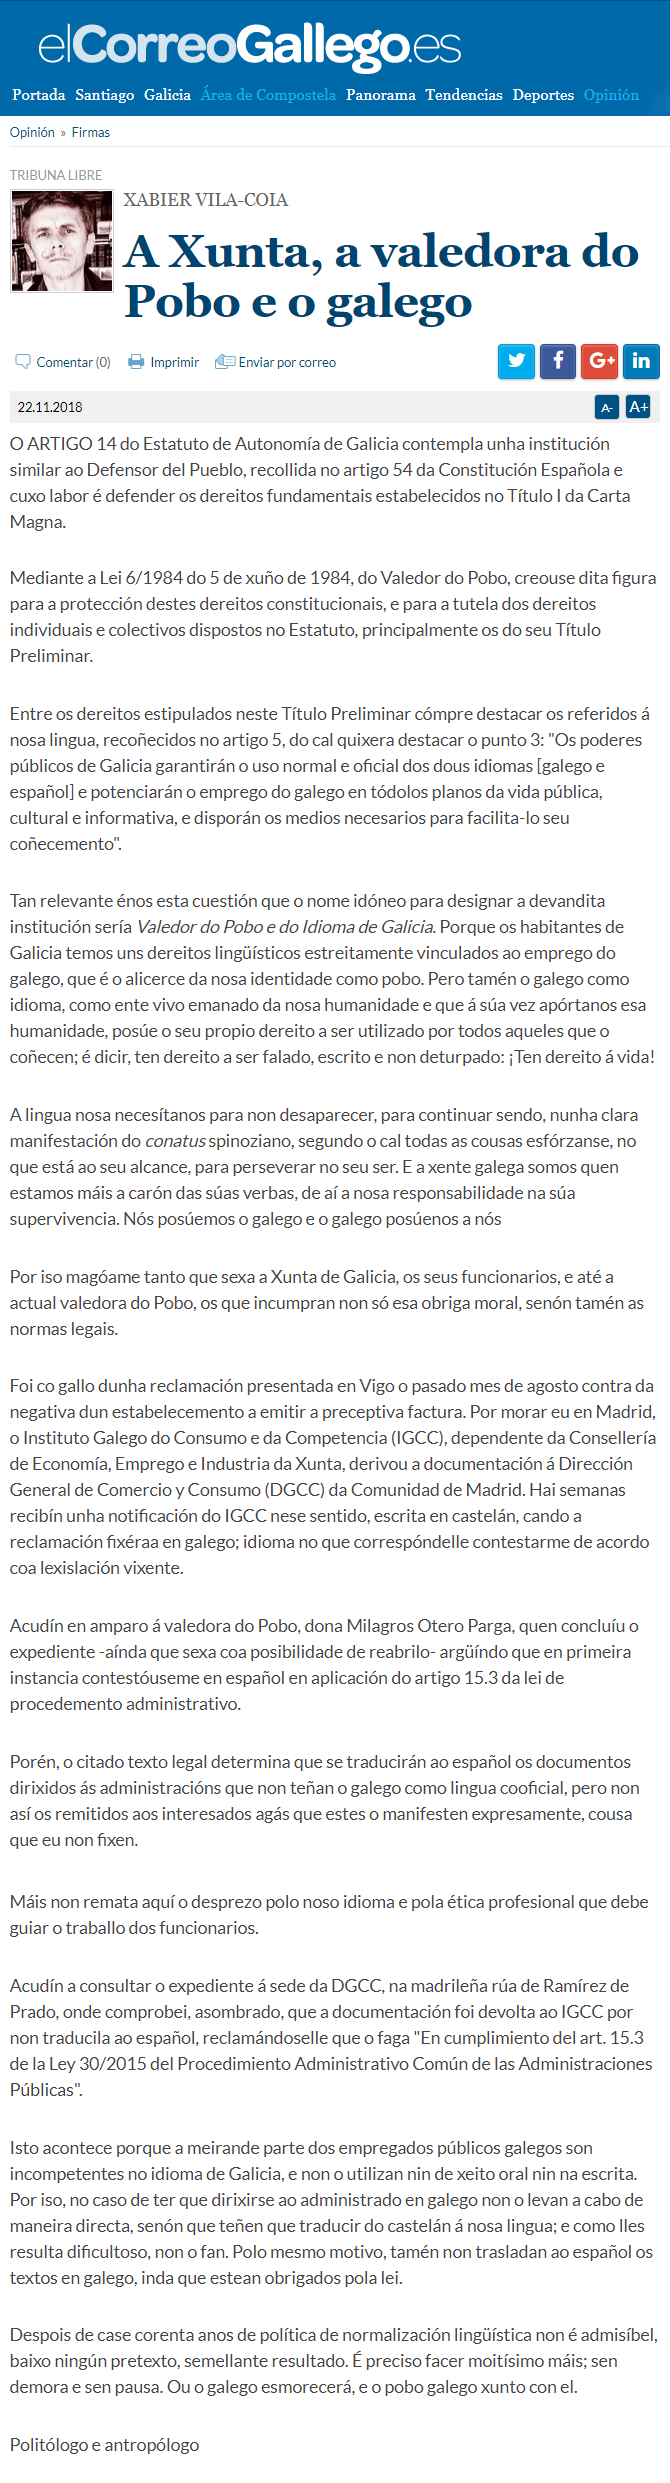 Artigo de opinión de Xabier Vila-Coia en El Correo Gallego do 22 de novembro de 2018, titulado "A Xunta, a Valedora do Pobo e o galego".